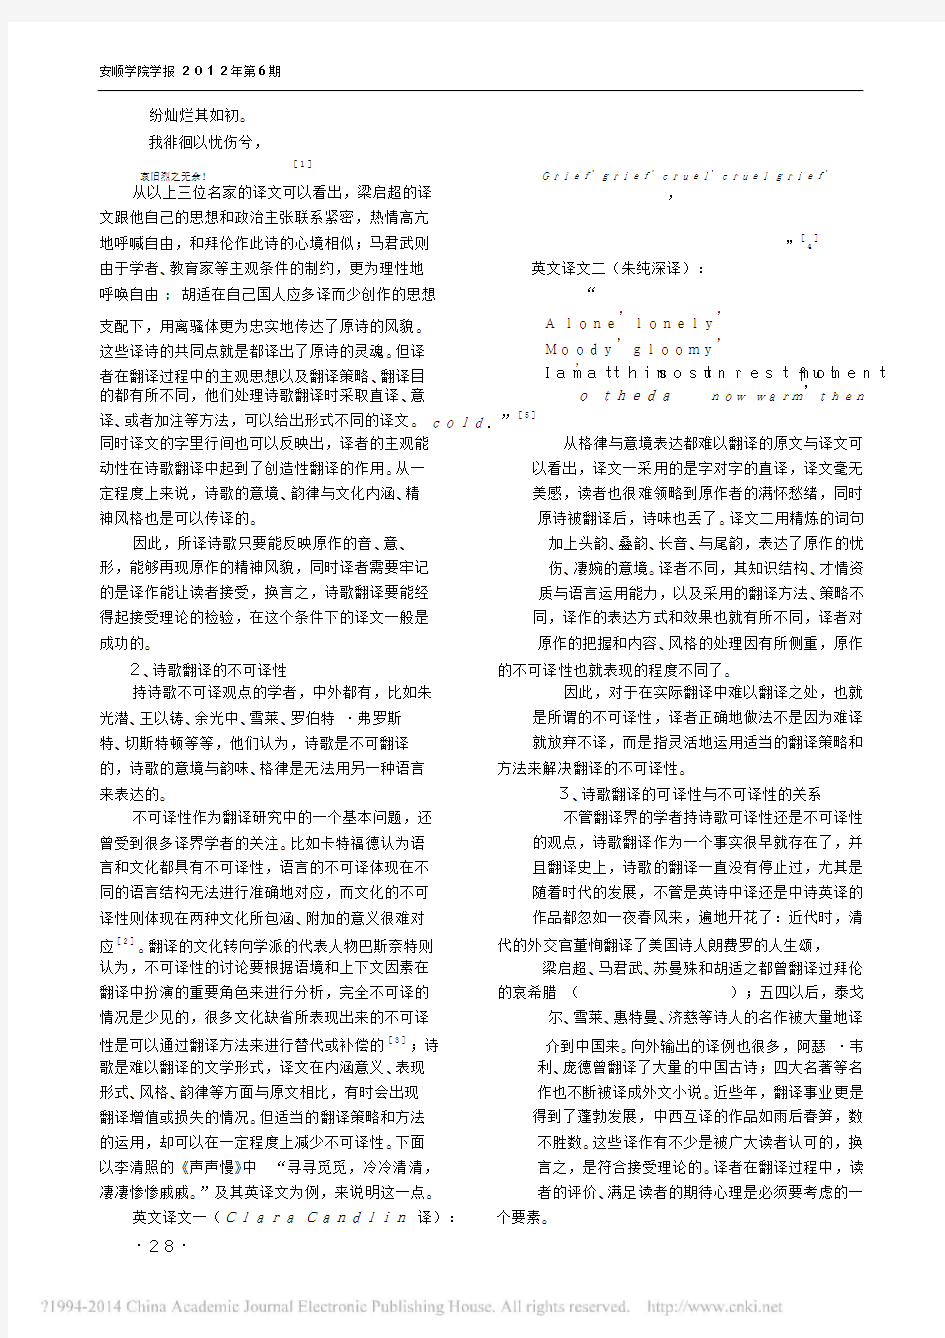 论诗歌翻译的可译性与不可译性_饶卫民.pdf